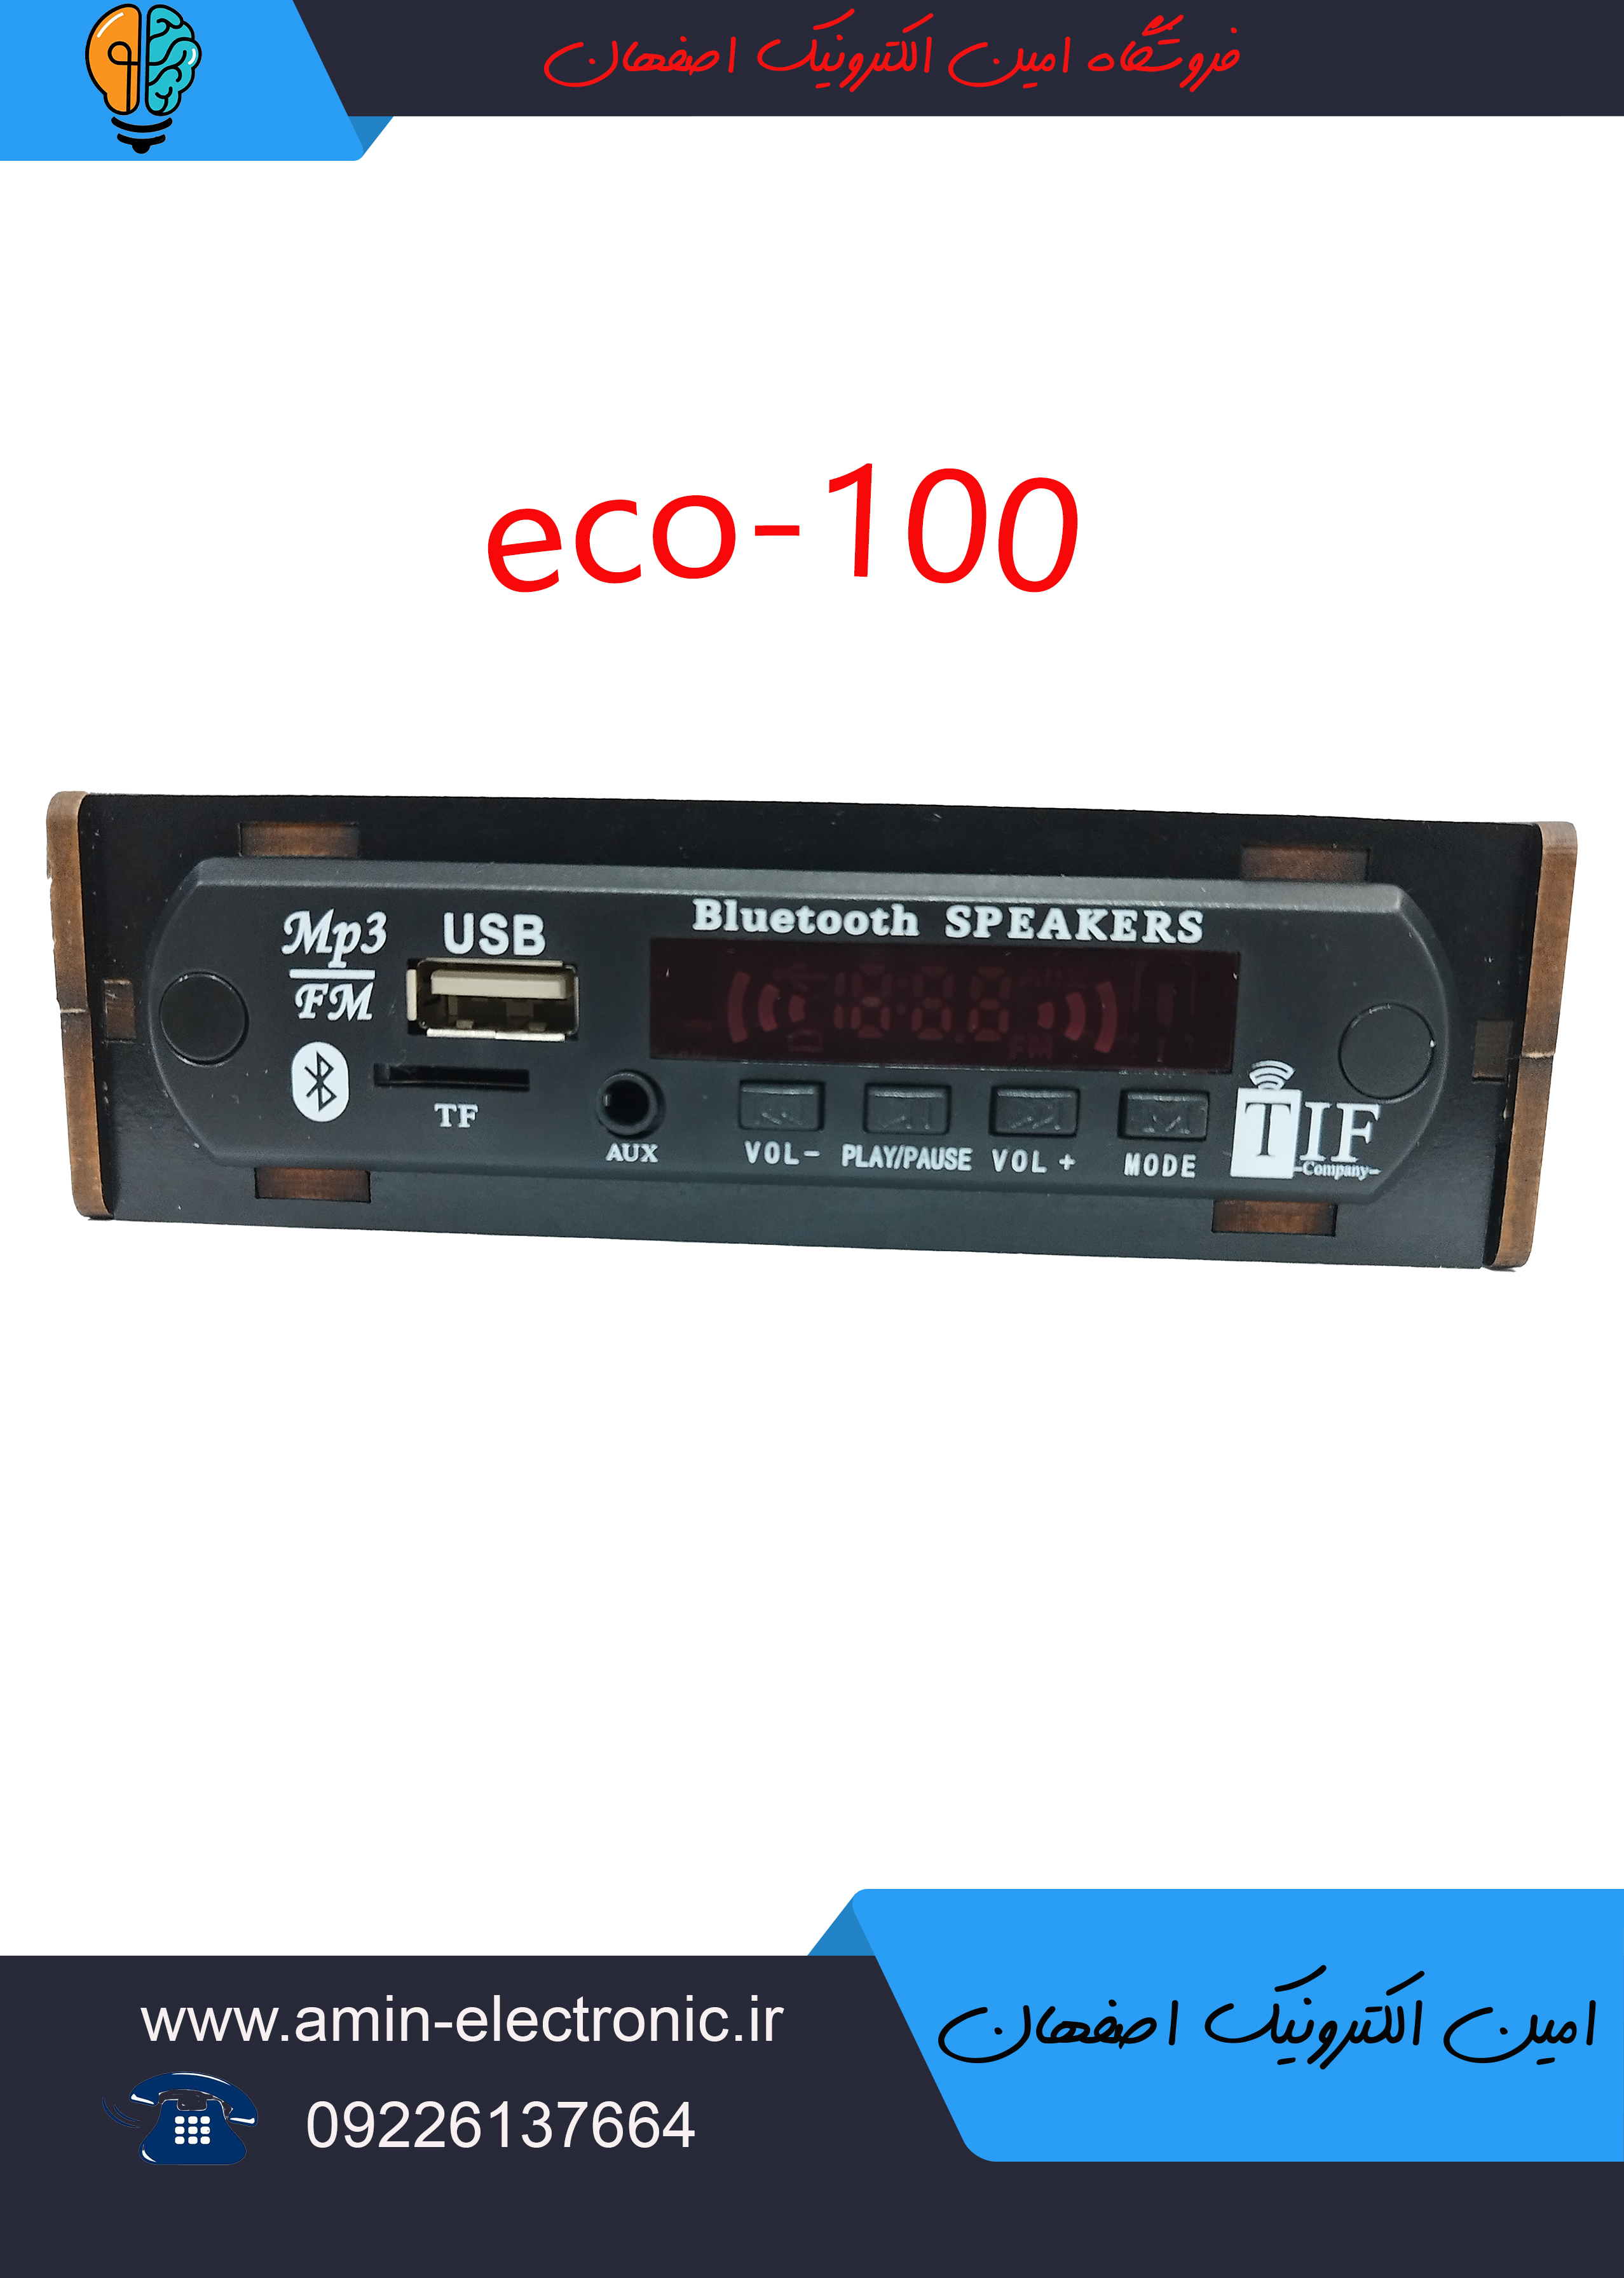 دستگاه مبدل فلش خور و بلوتوثی ضبط های قدیمی مدل eco_100 همراه با آداپتور و کابل سفید و قرمز